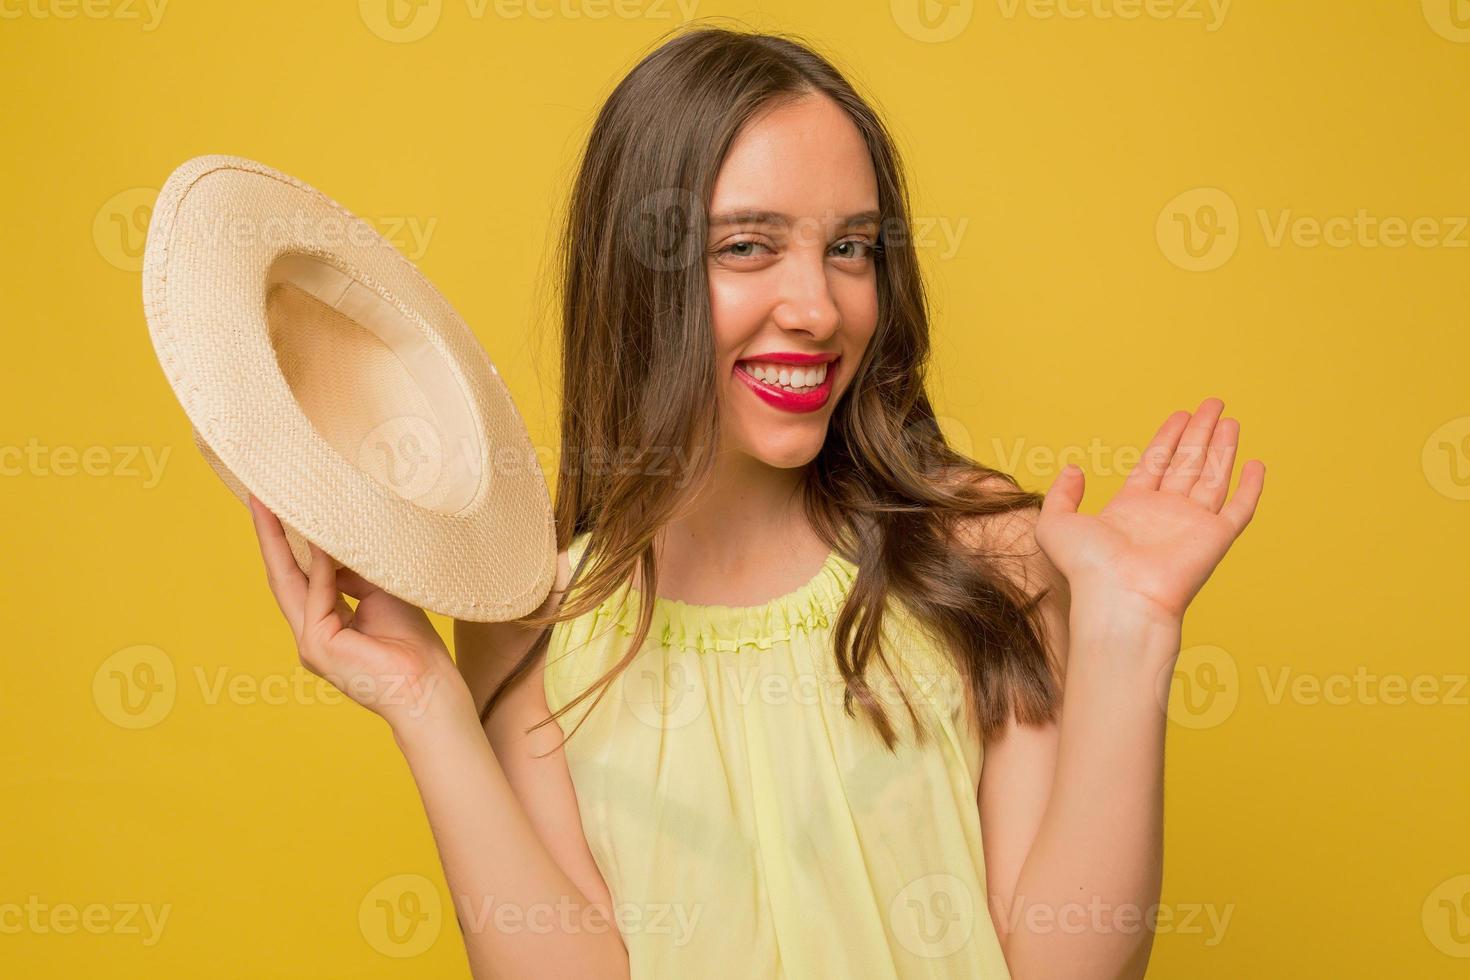 grappig charmant meisje met roze lippen zwaait naar de camera terwijl ze een hoed vasthoudt en poseert voor de camera over een gele achtergrond foto